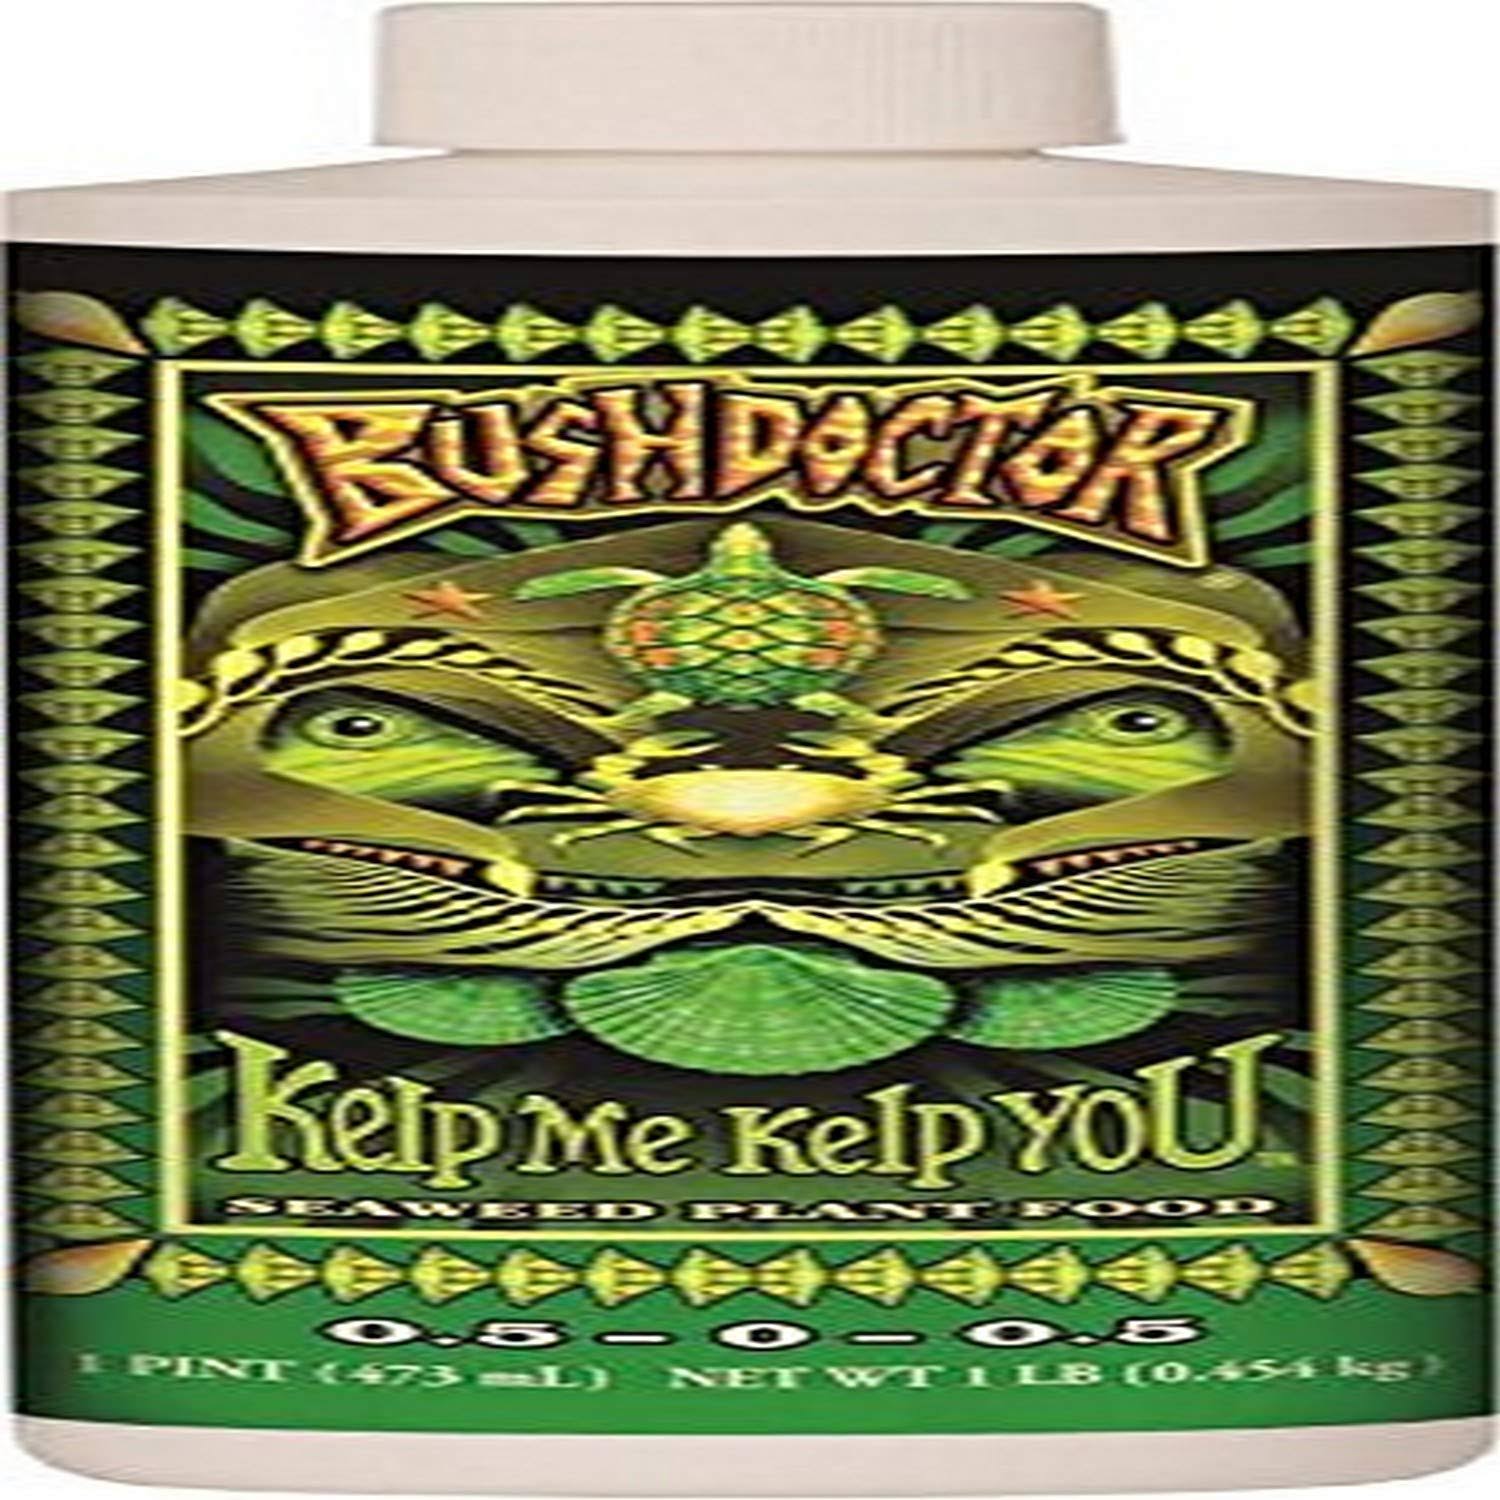 FoxFarm Bushdoctor Kelp Me You Fertilizer - 1 Pint